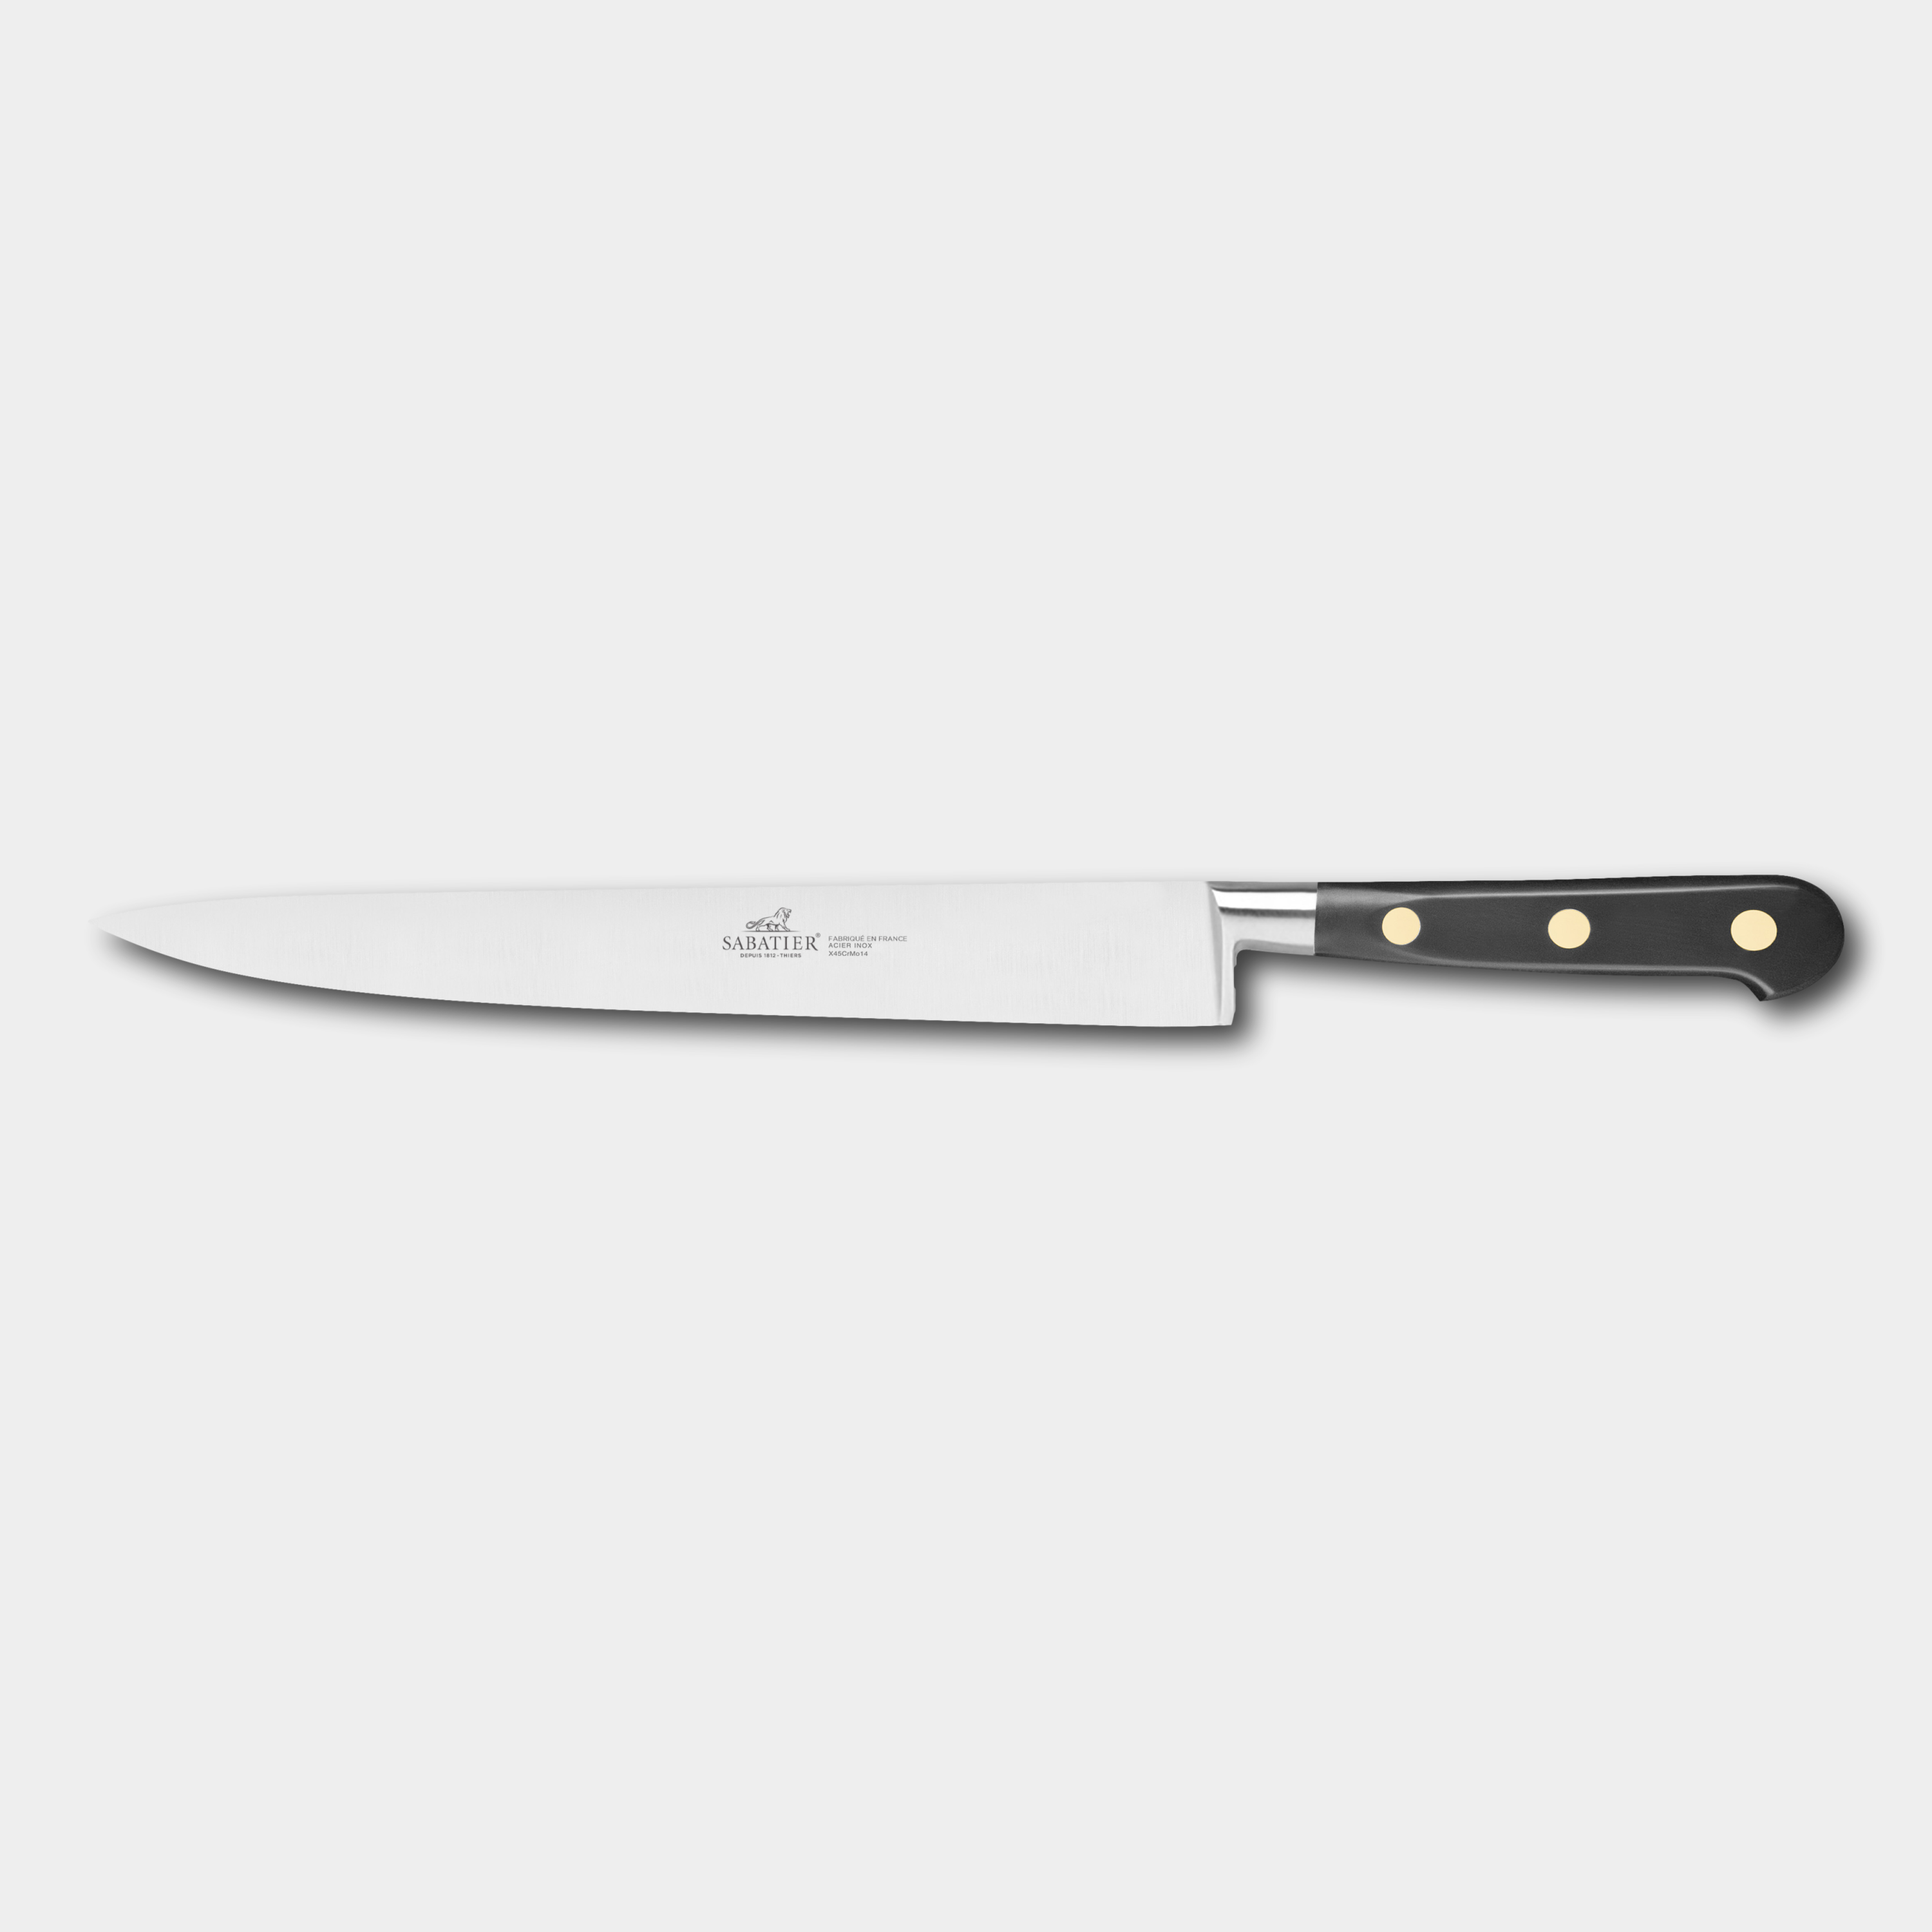 Lion Sabatier CHEF 25cm Slicing Knife